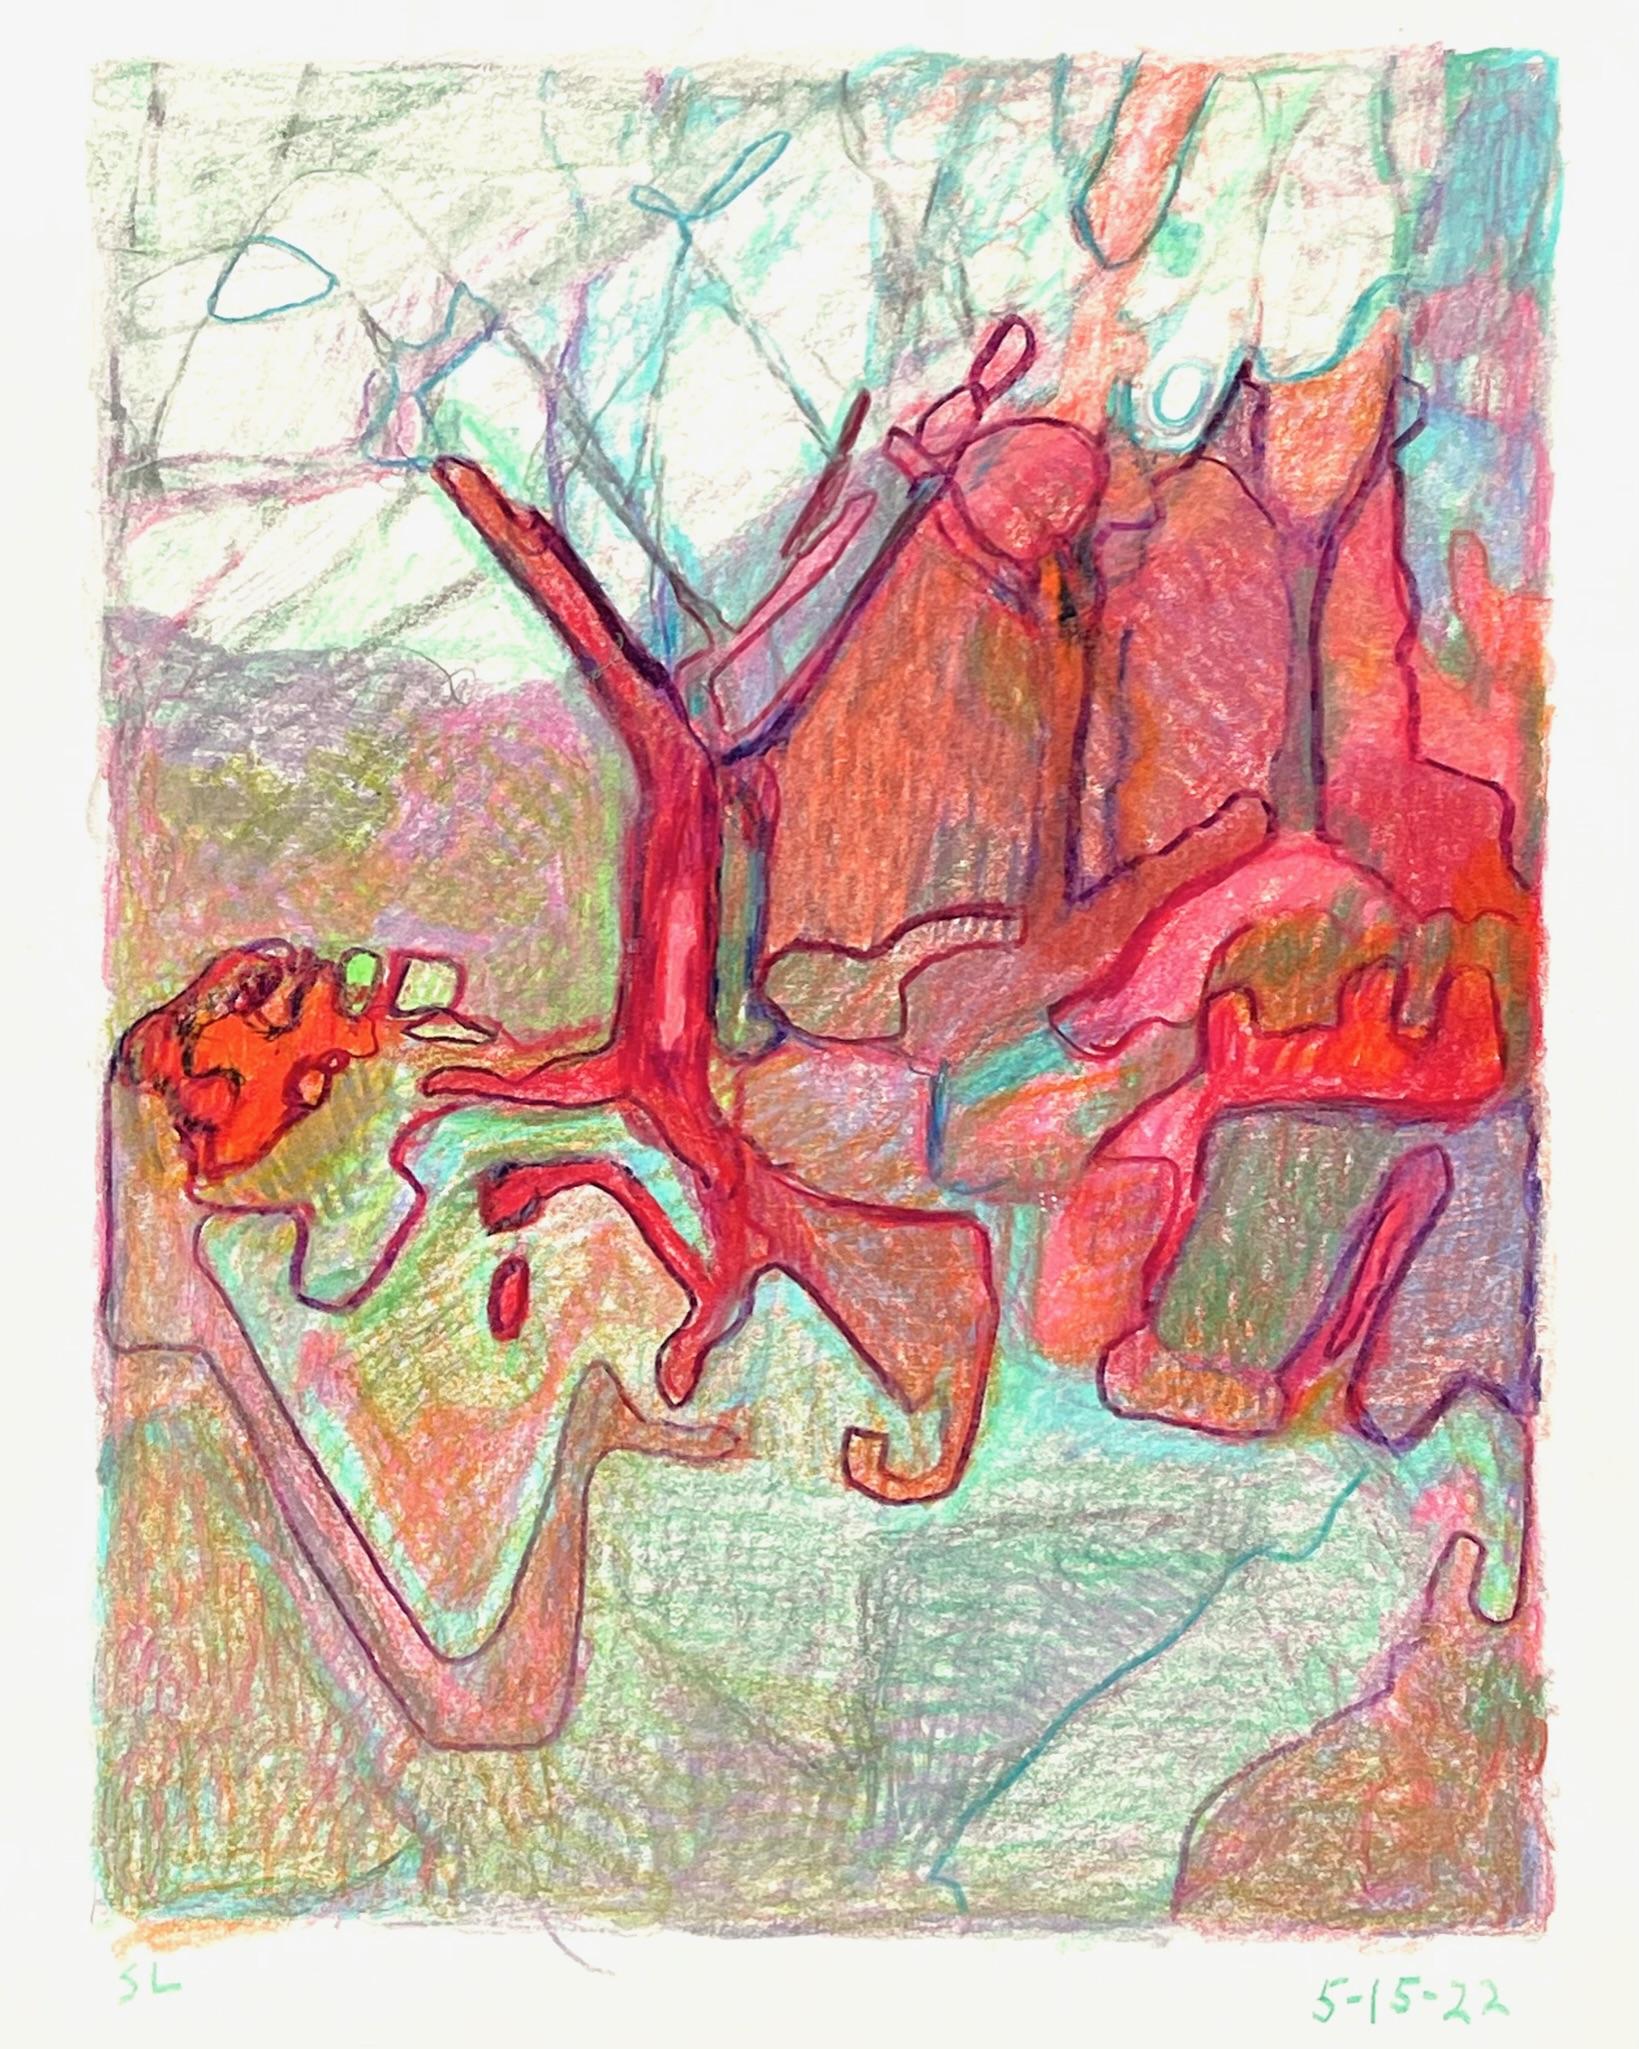 5-15-22, impressionistische, abstrahierte Landschaftszeichnung mit farbigem Bleistift